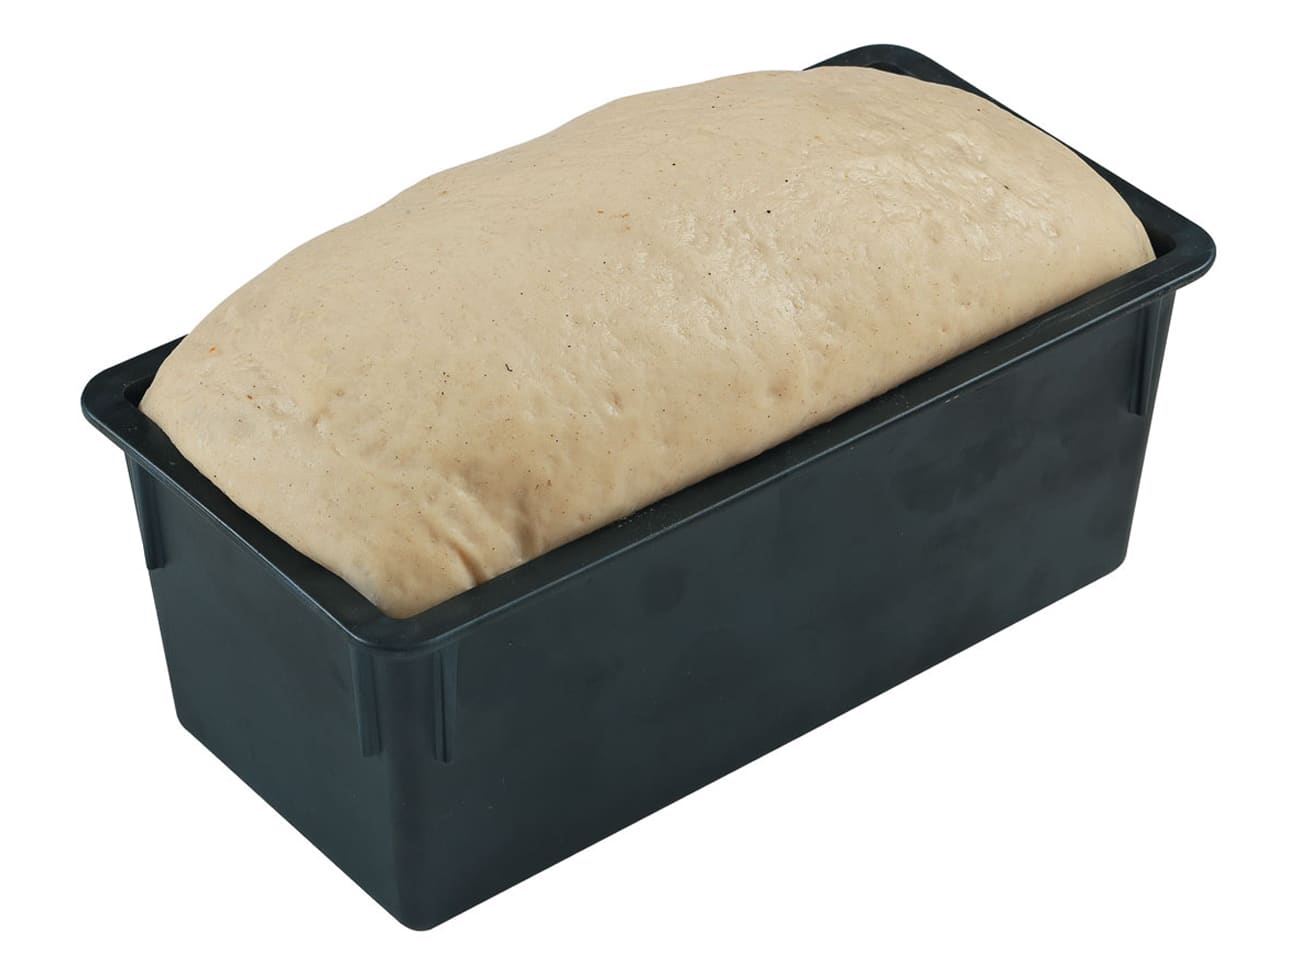 Moule pain de mie Exoglass® - sans couvercle - 18 x 8 cm - Matfer -  Meilleur du Chef